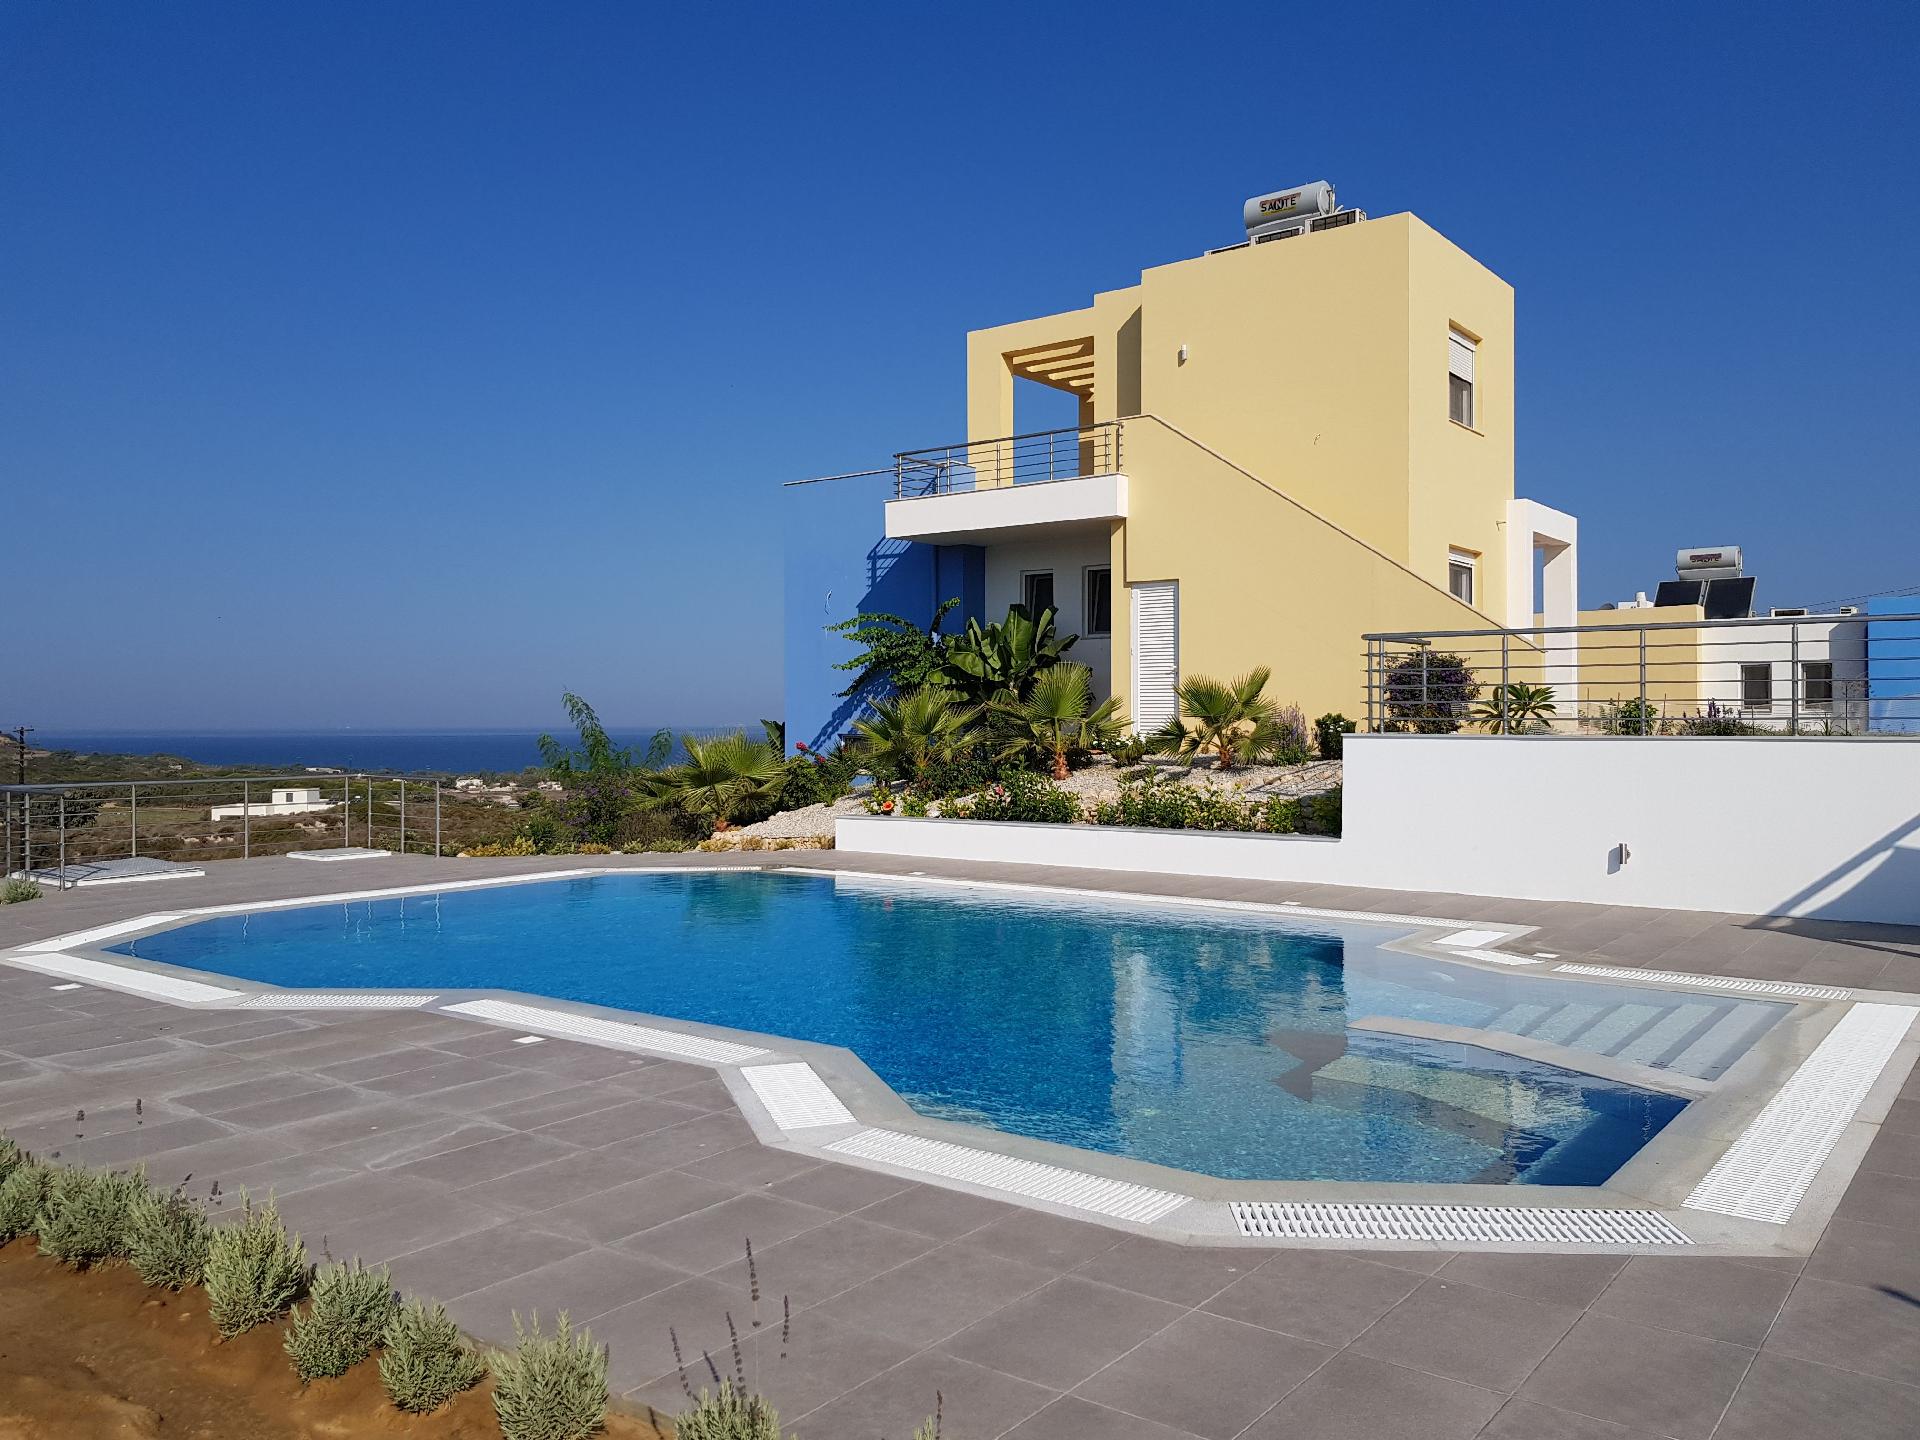 Modernes Ferienhaus mit Sonnenterrasse, Pool, Gril  in Griechenland